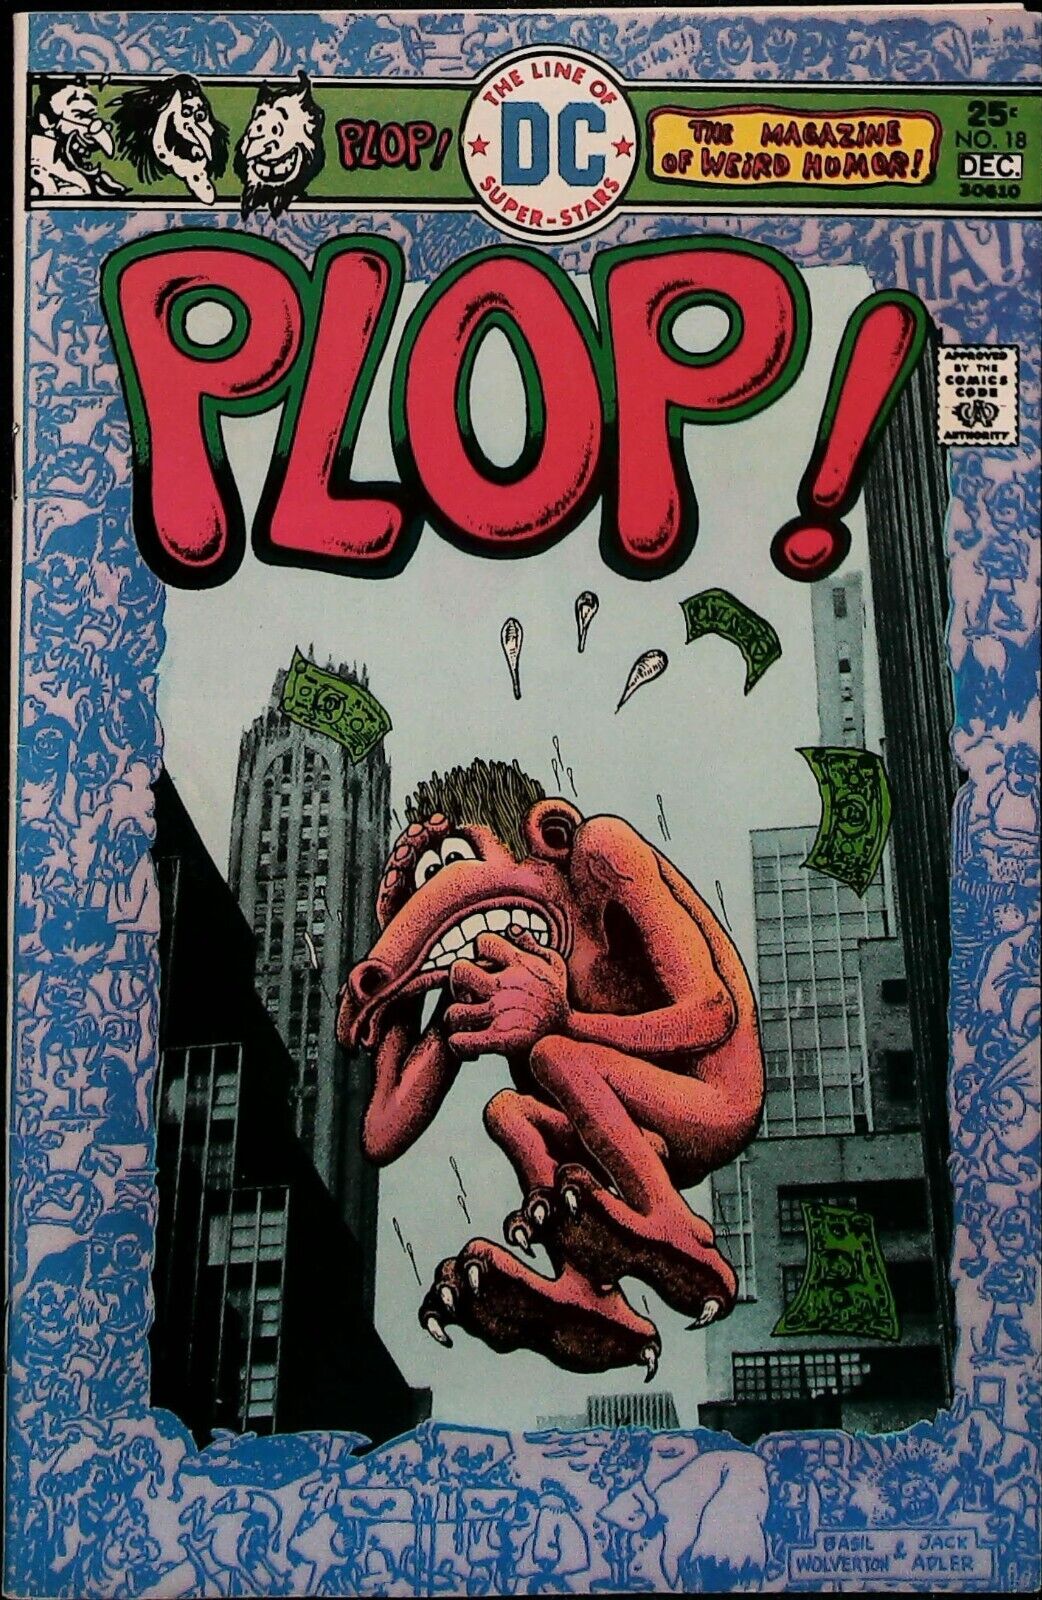 Plop #18 Vol 1 (1975) -High Grade